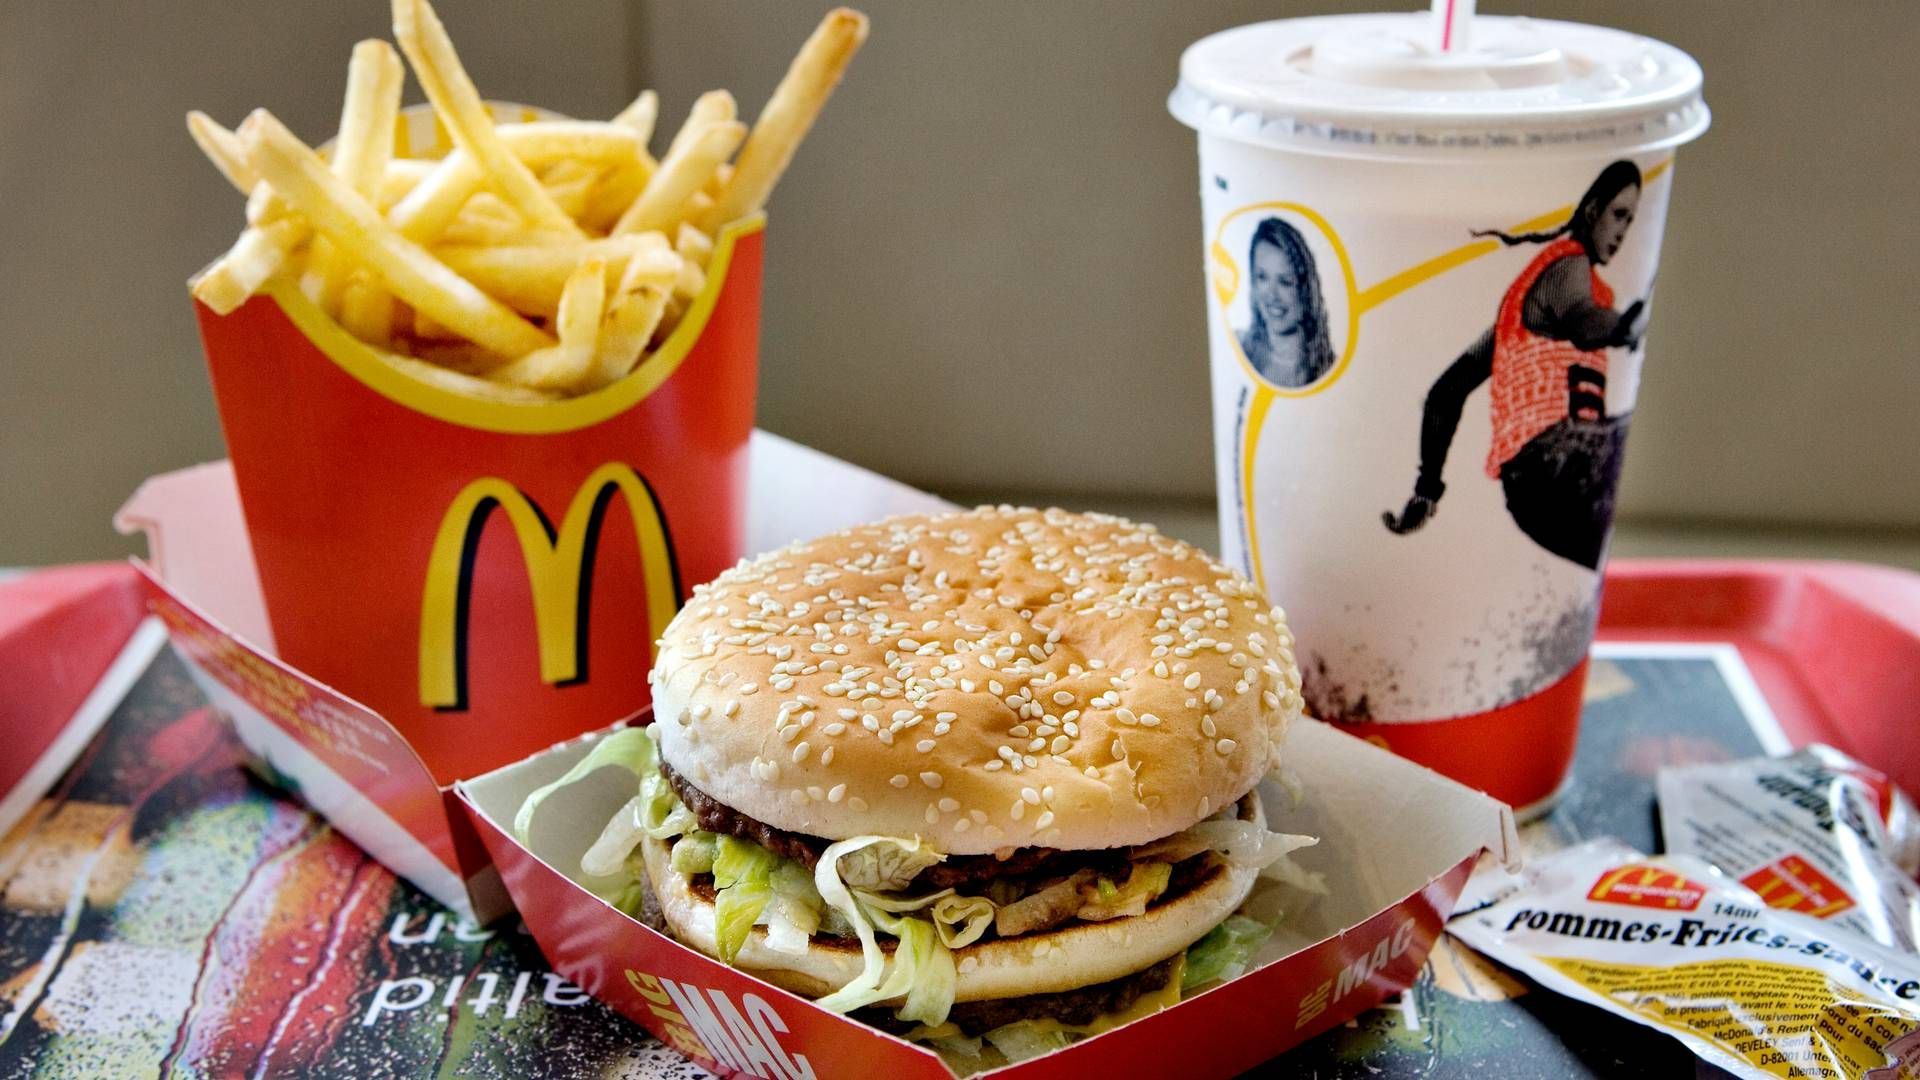 McDonalds har tabt sagen om brugen af varemærket "Big Mac" til sine burgere med kylling. | Foto: Mathilde Bech